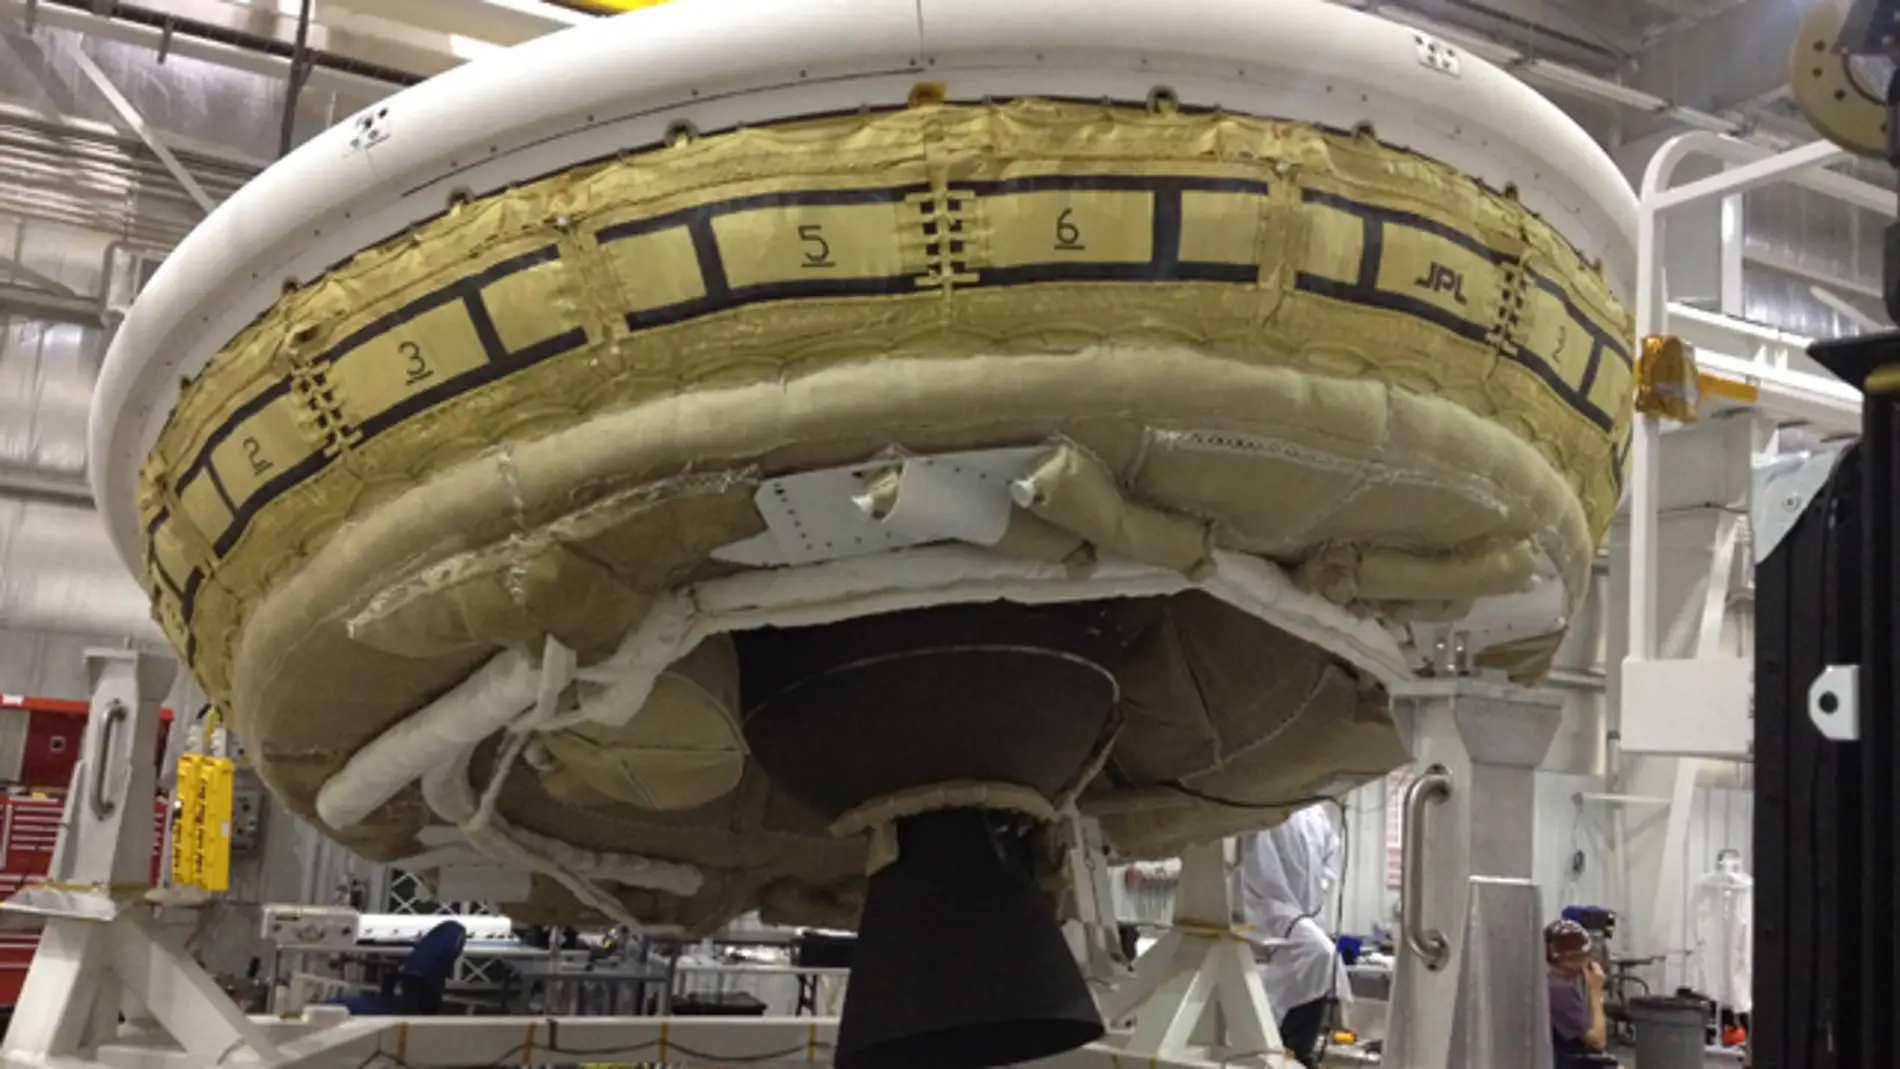 LDSD o platillo volante de la NASA